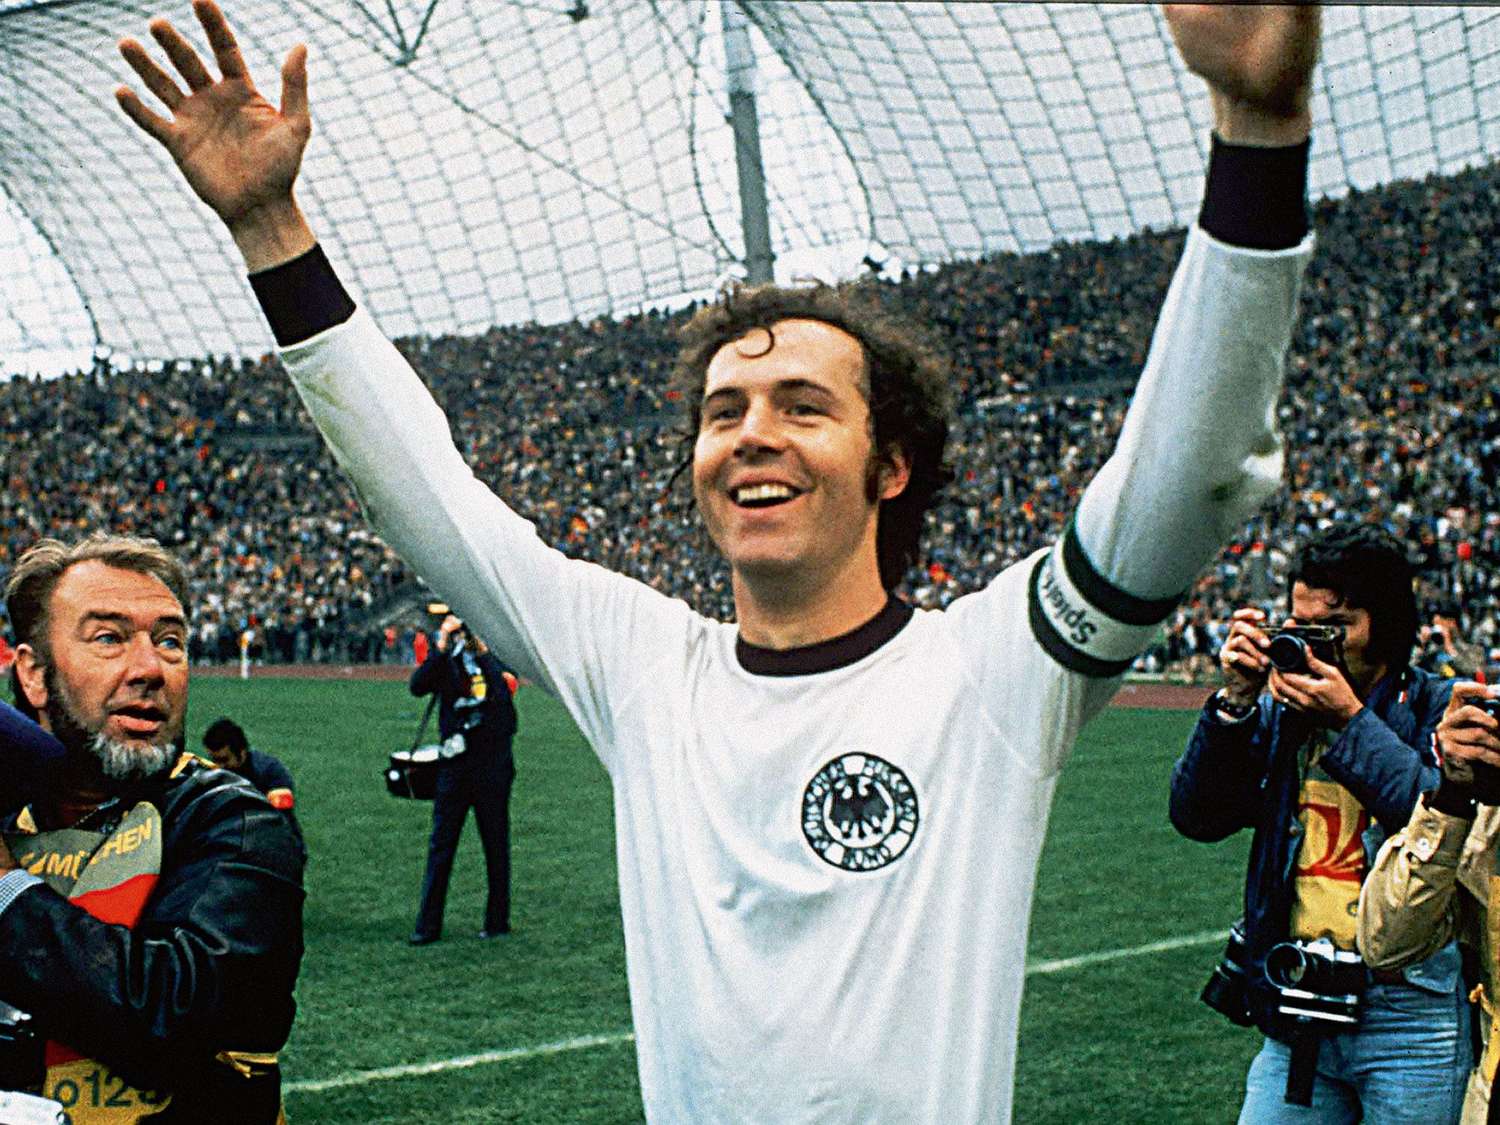 Murió Beckenbauer, la leyenda alemana del fútbol mundial